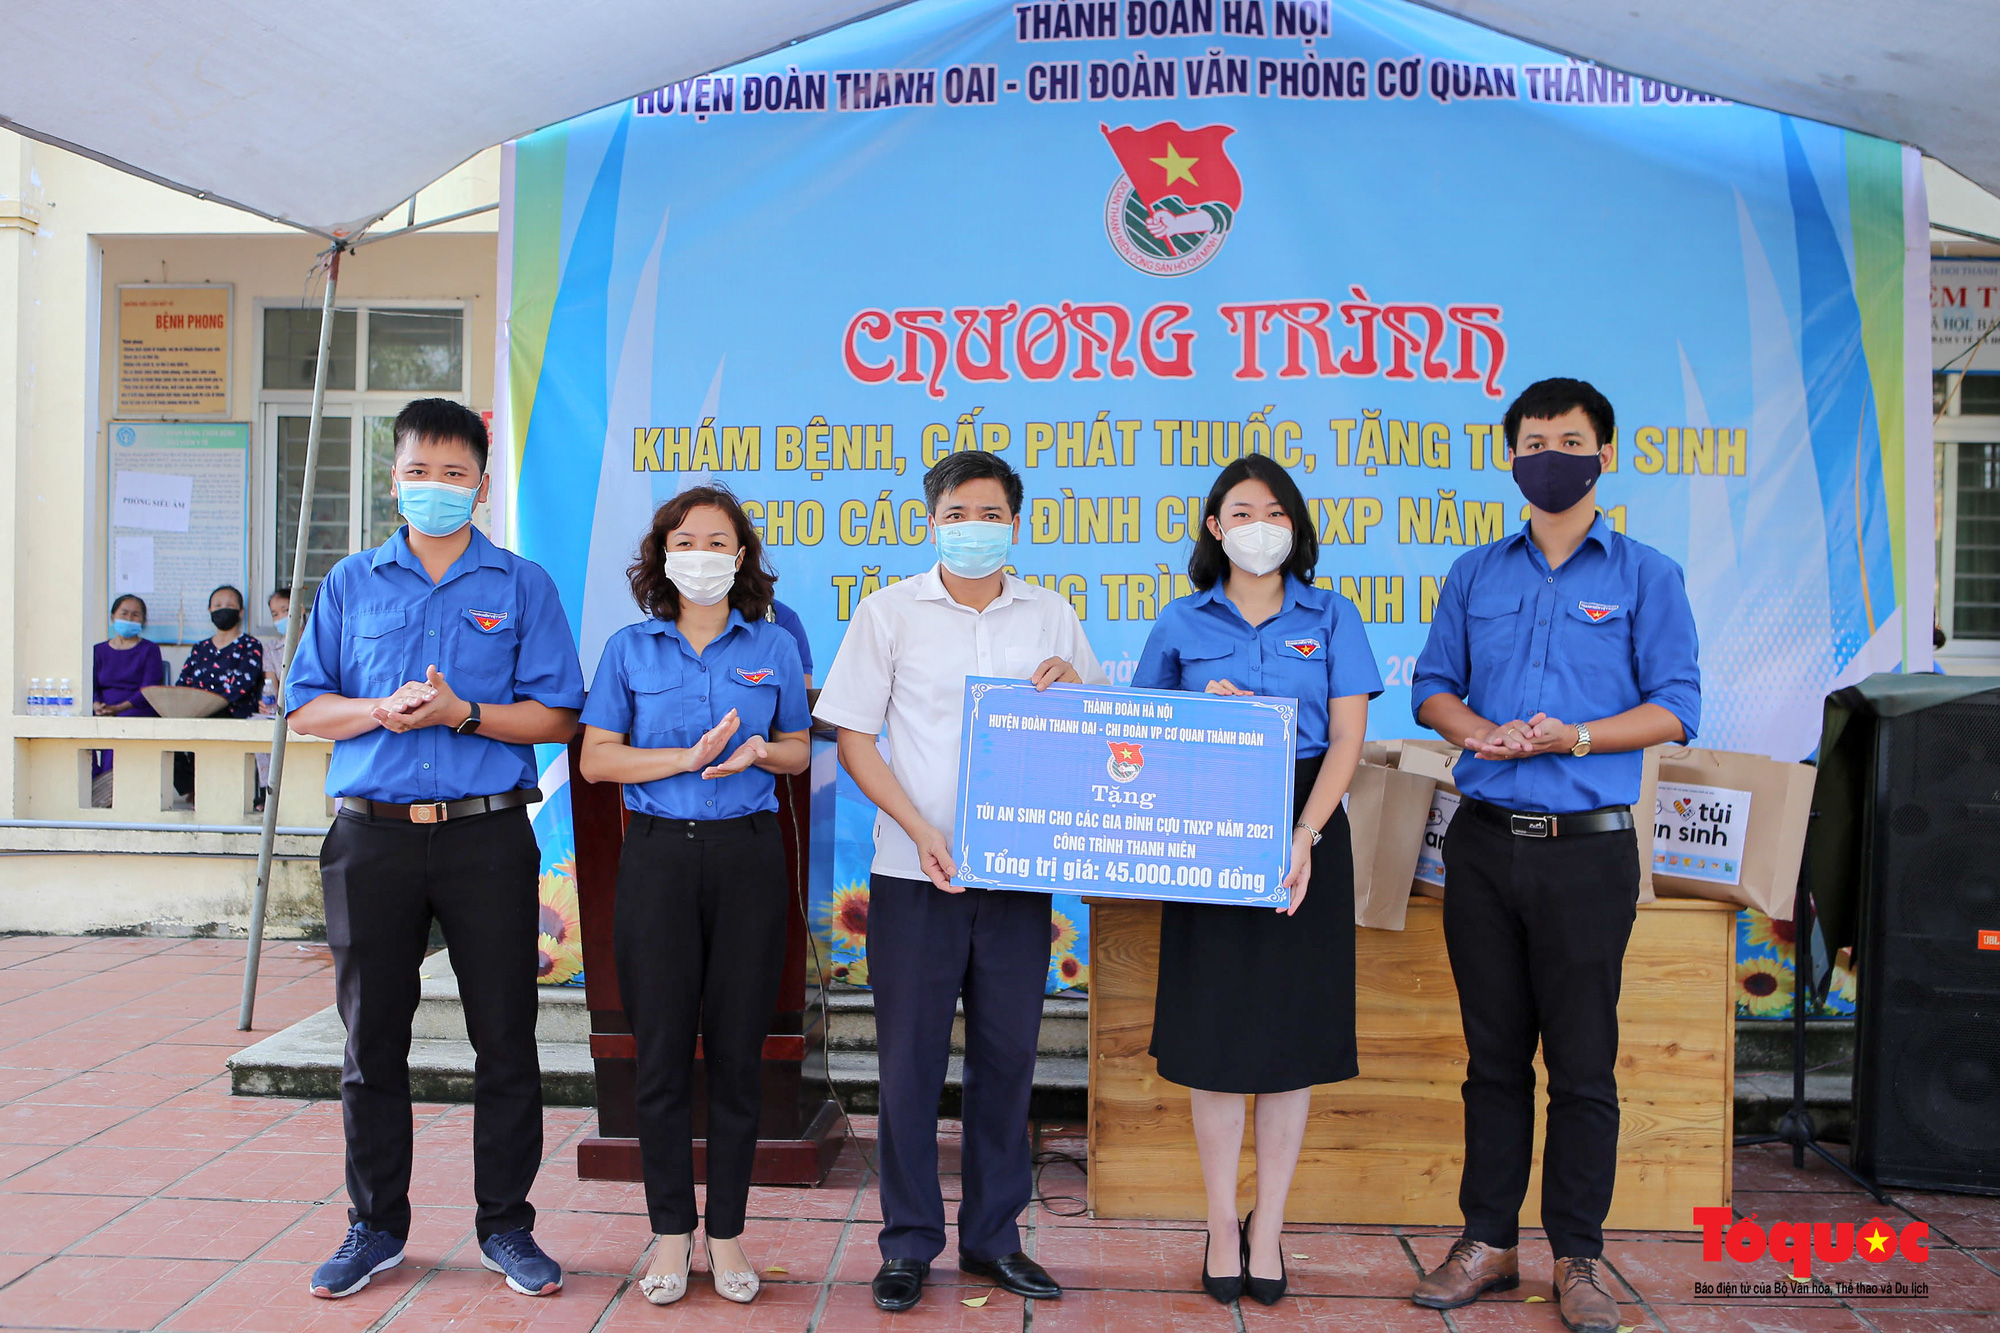 Thành đoàn Hà Nội tổ chức khám bệnh, tặng túi an sinh cho các gia đình cựu Thanh niên xung phong - Ảnh 2.